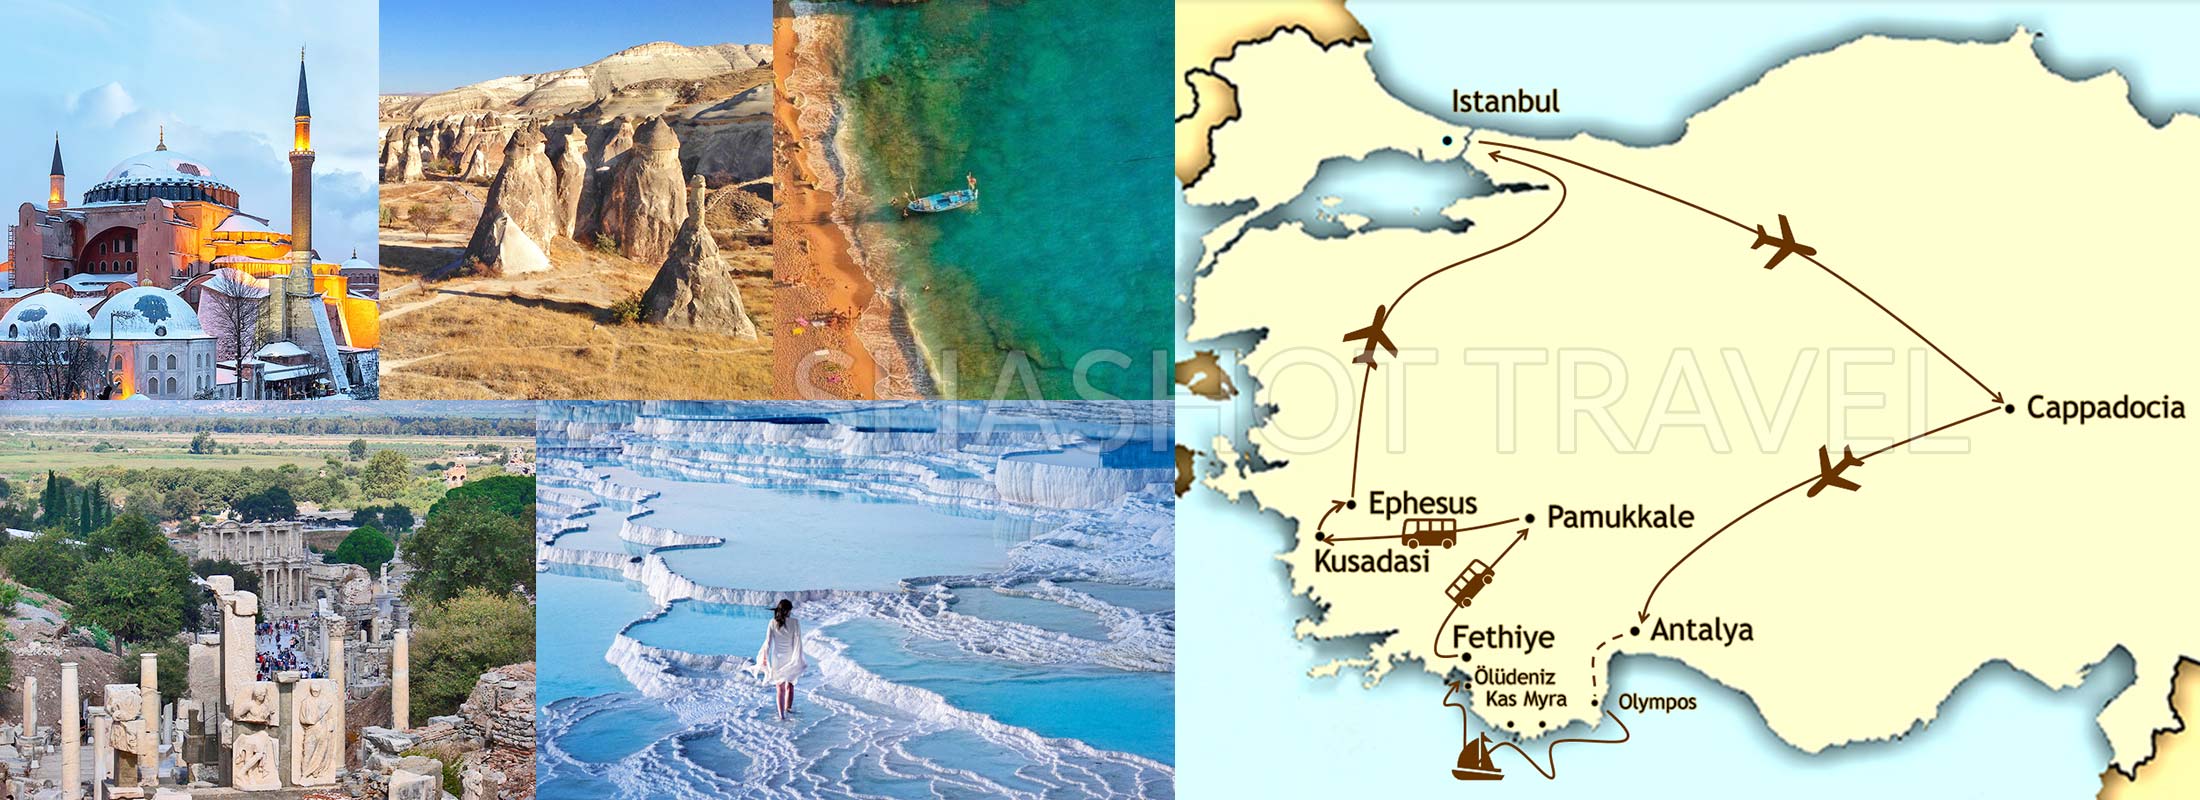 turkey-package-tours-12-days-istanbul-hagia-sophia-museum-blue-mosque-cappadocia-blue-cruise-olympos-fethiye-ephesus-pamukkale-by-flight-map-shashot-travel